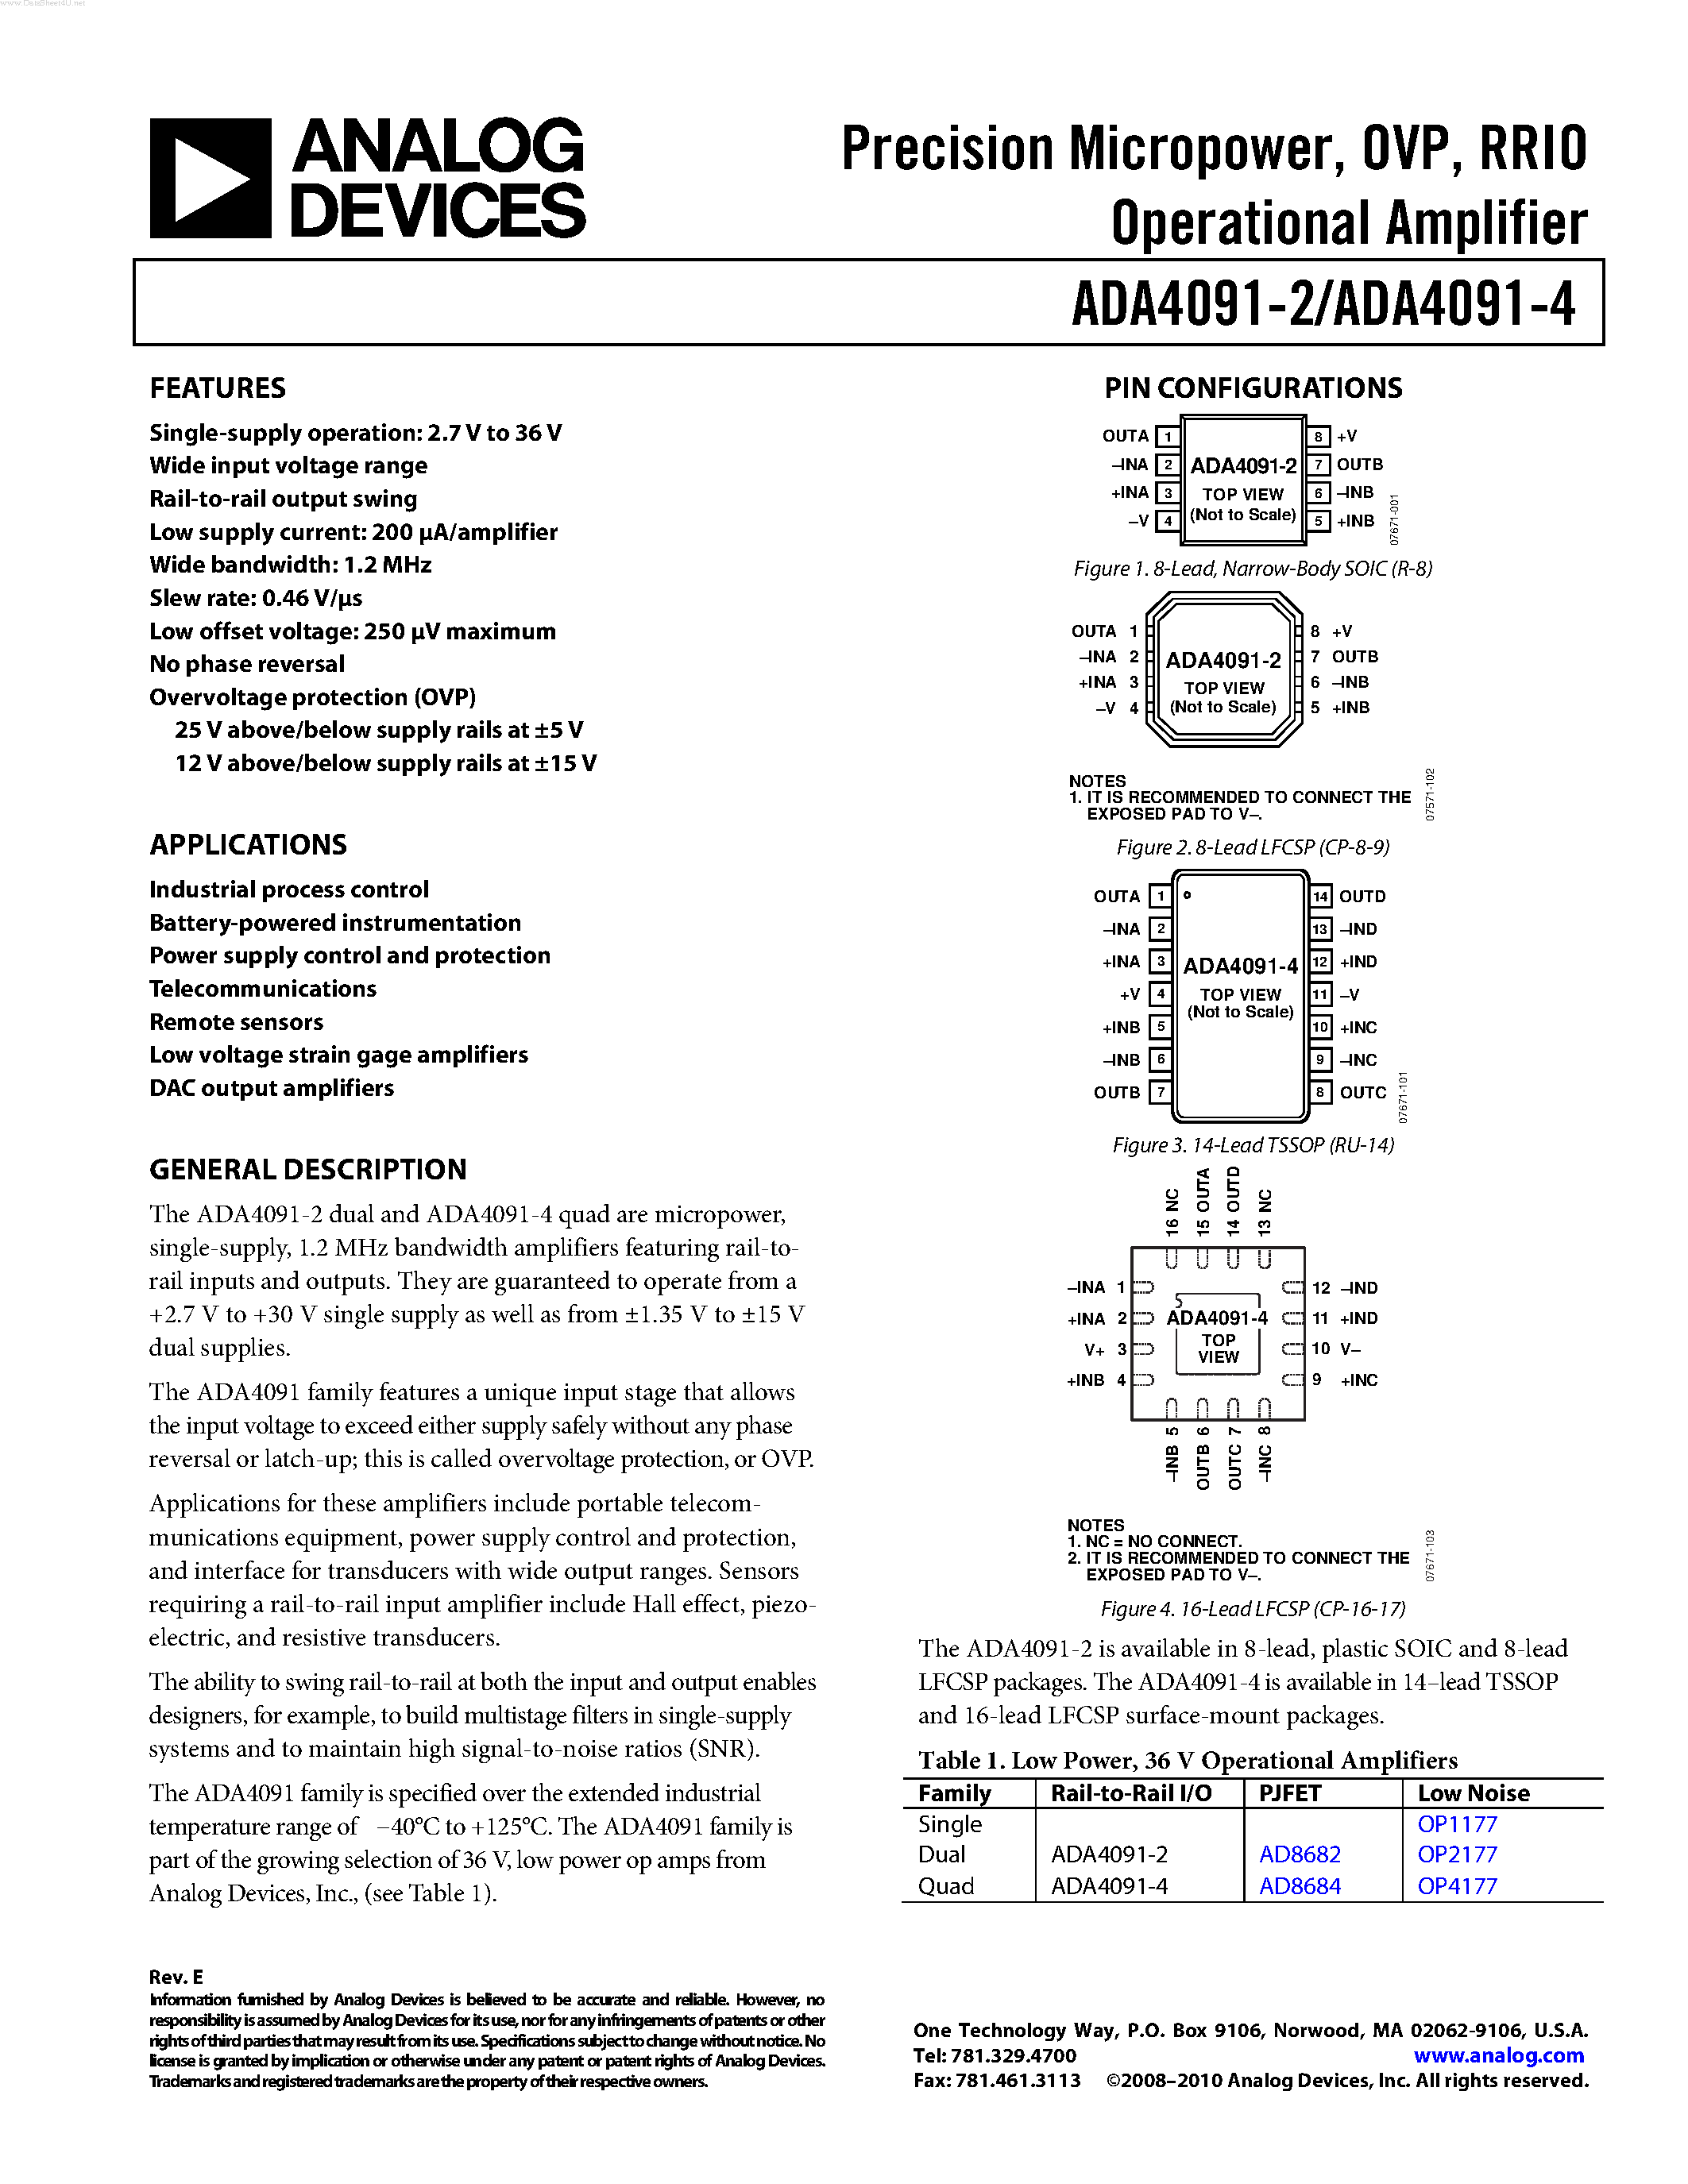 Даташит ADA4091-2 - (ADA4091-2 / ADA4091-4) Operational Amplifier страница 1